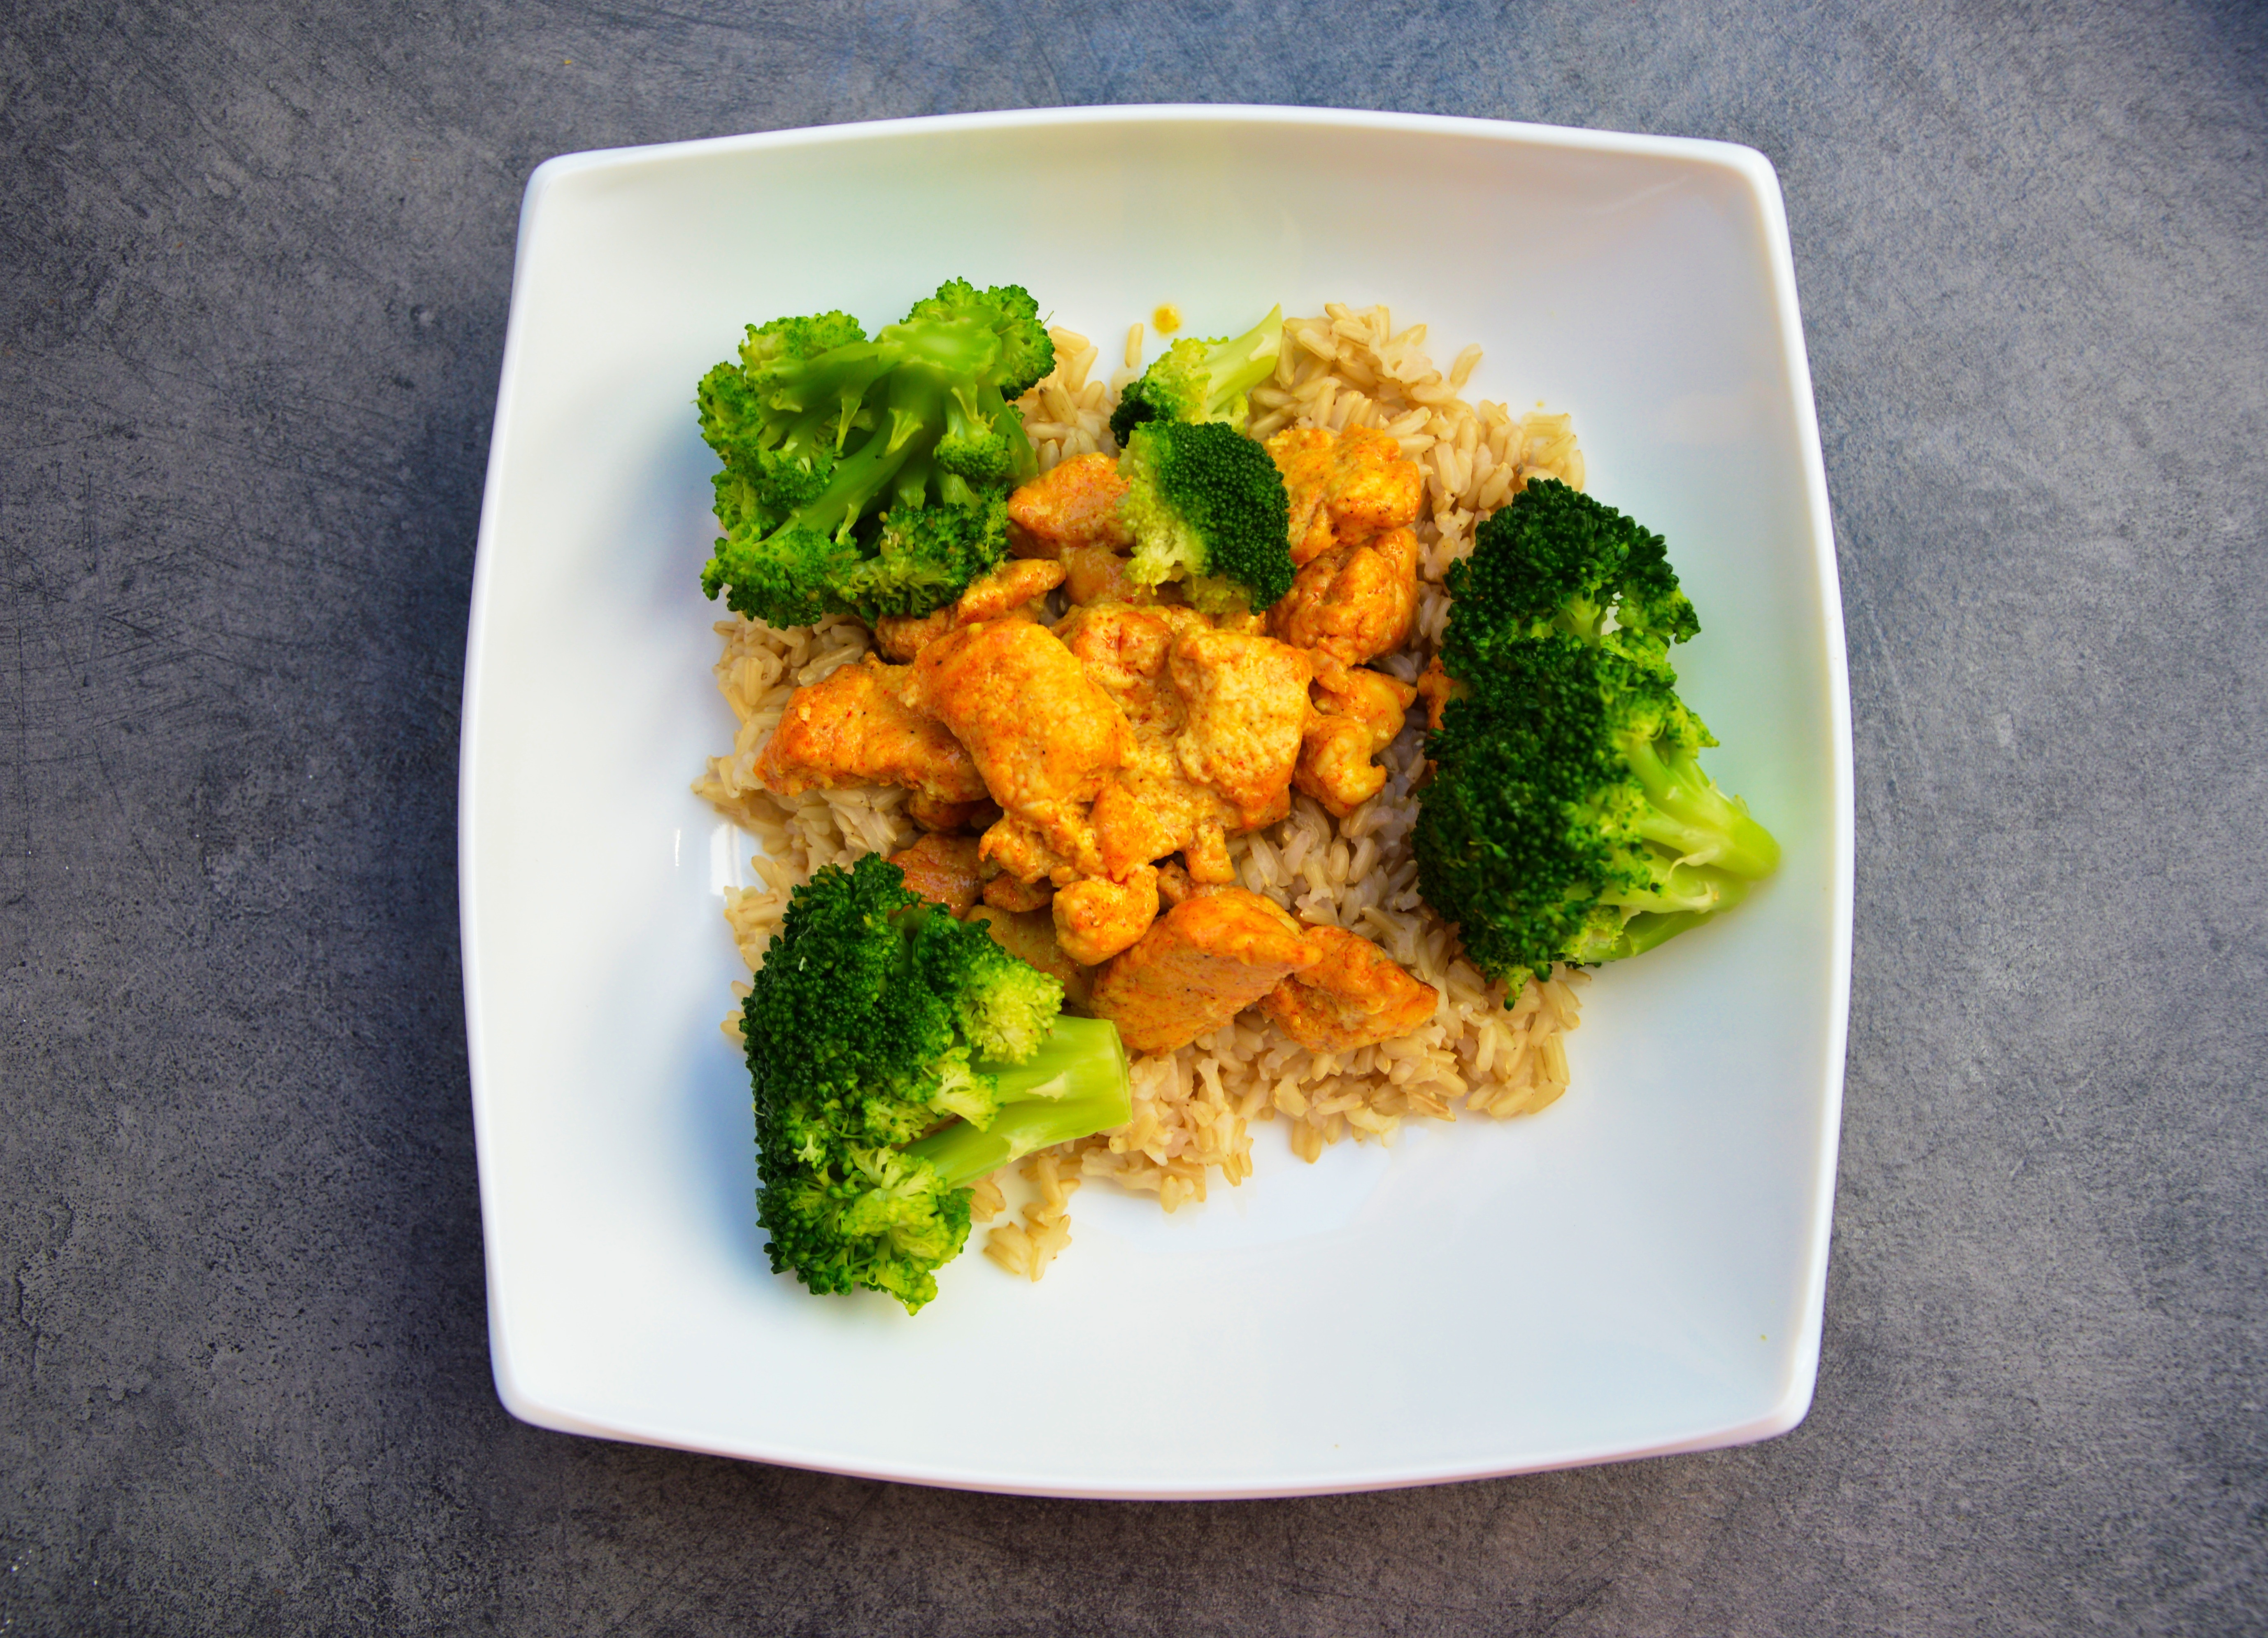 Diet chicken and broccoli